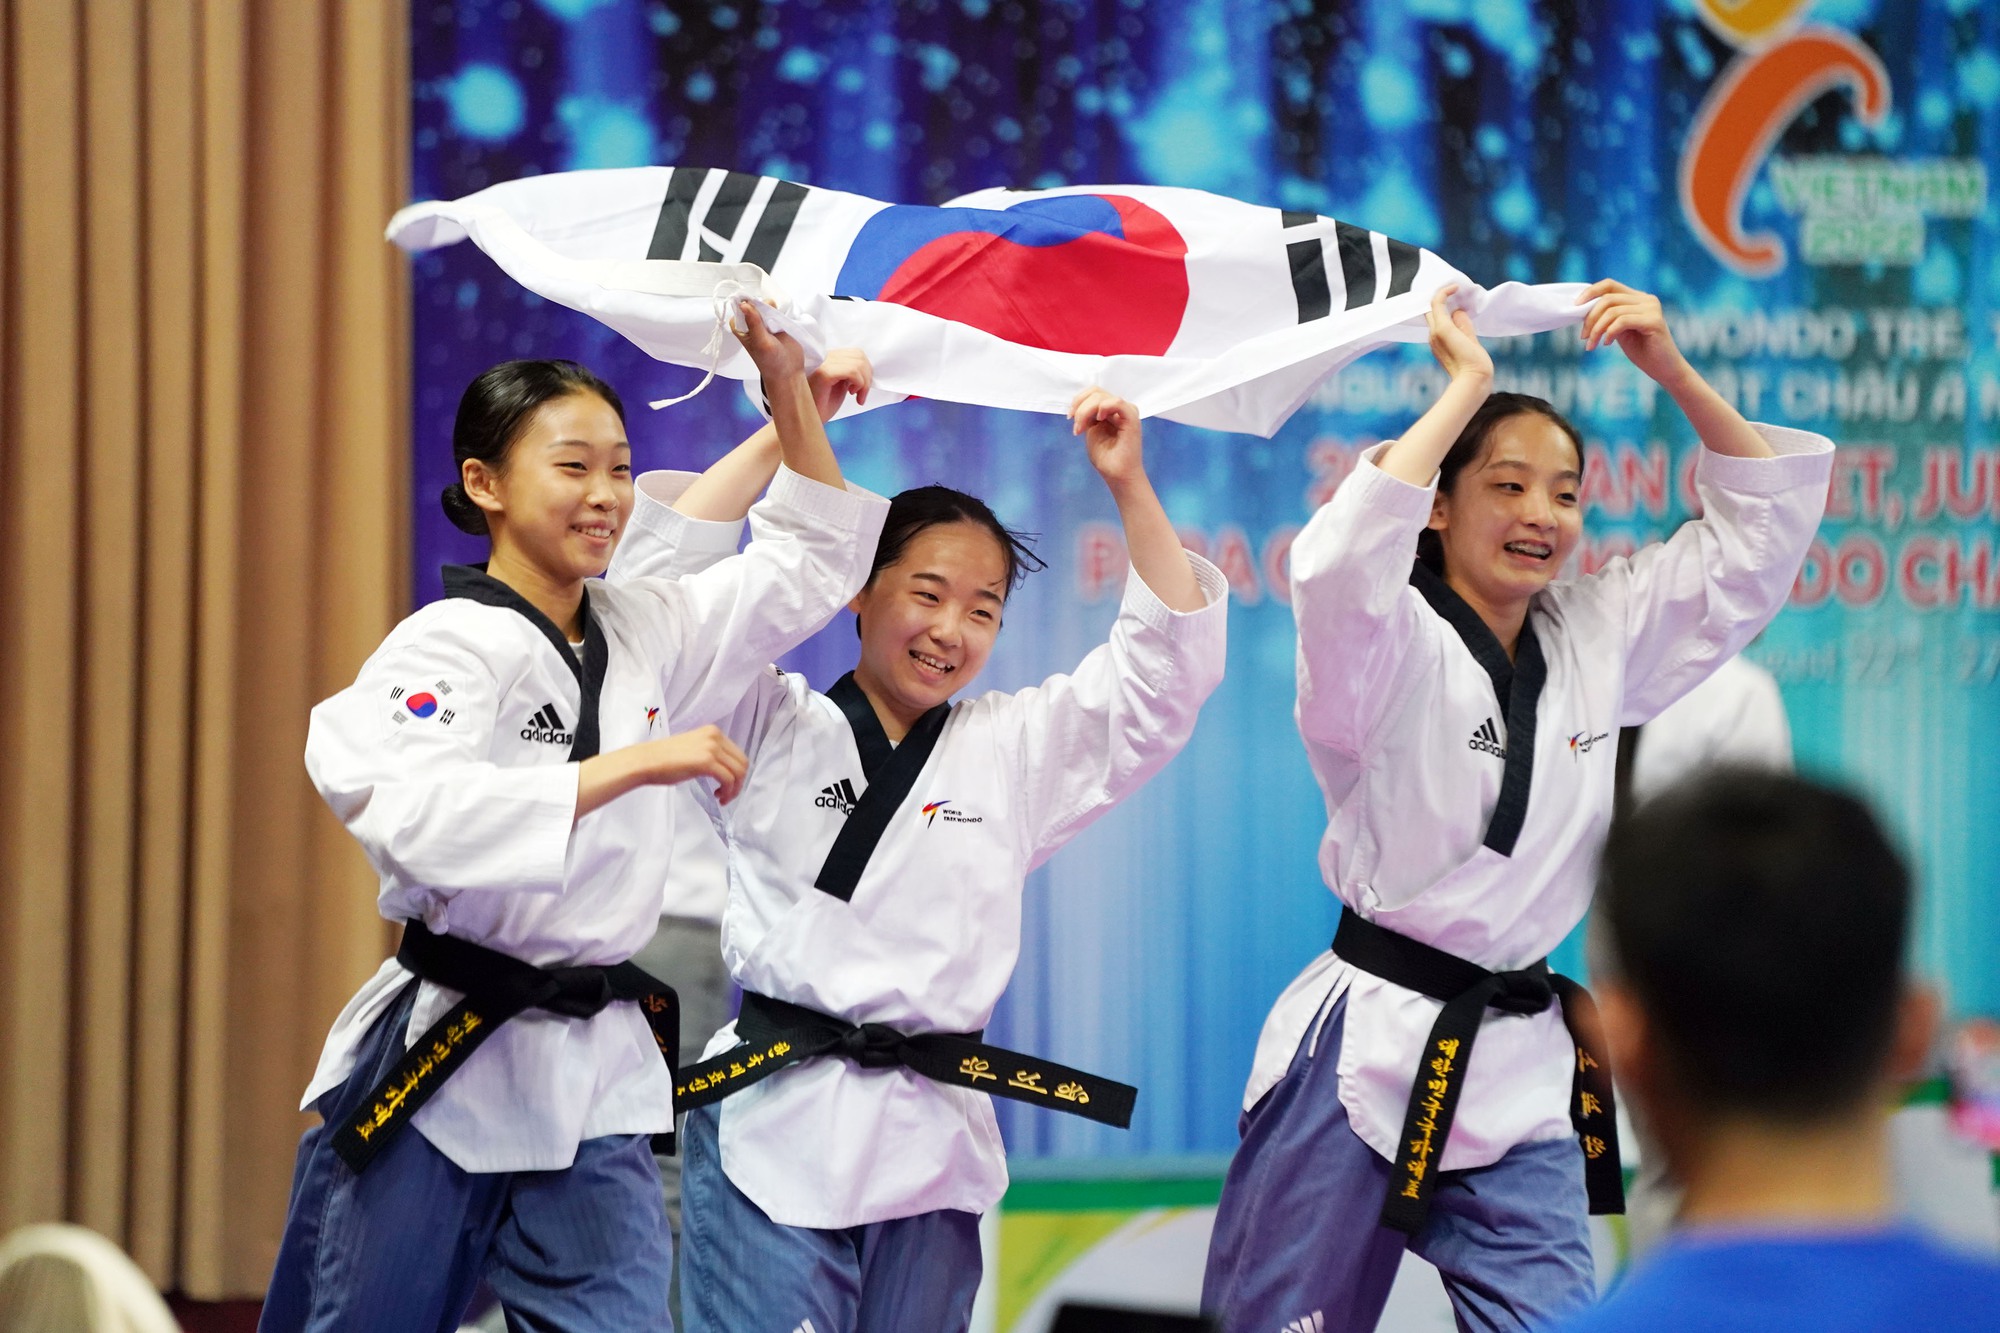 Ấn tượng các nữ võ sĩ nhí mở màn ngày hội Taekwondo châu Á 2022 - Ảnh 3.